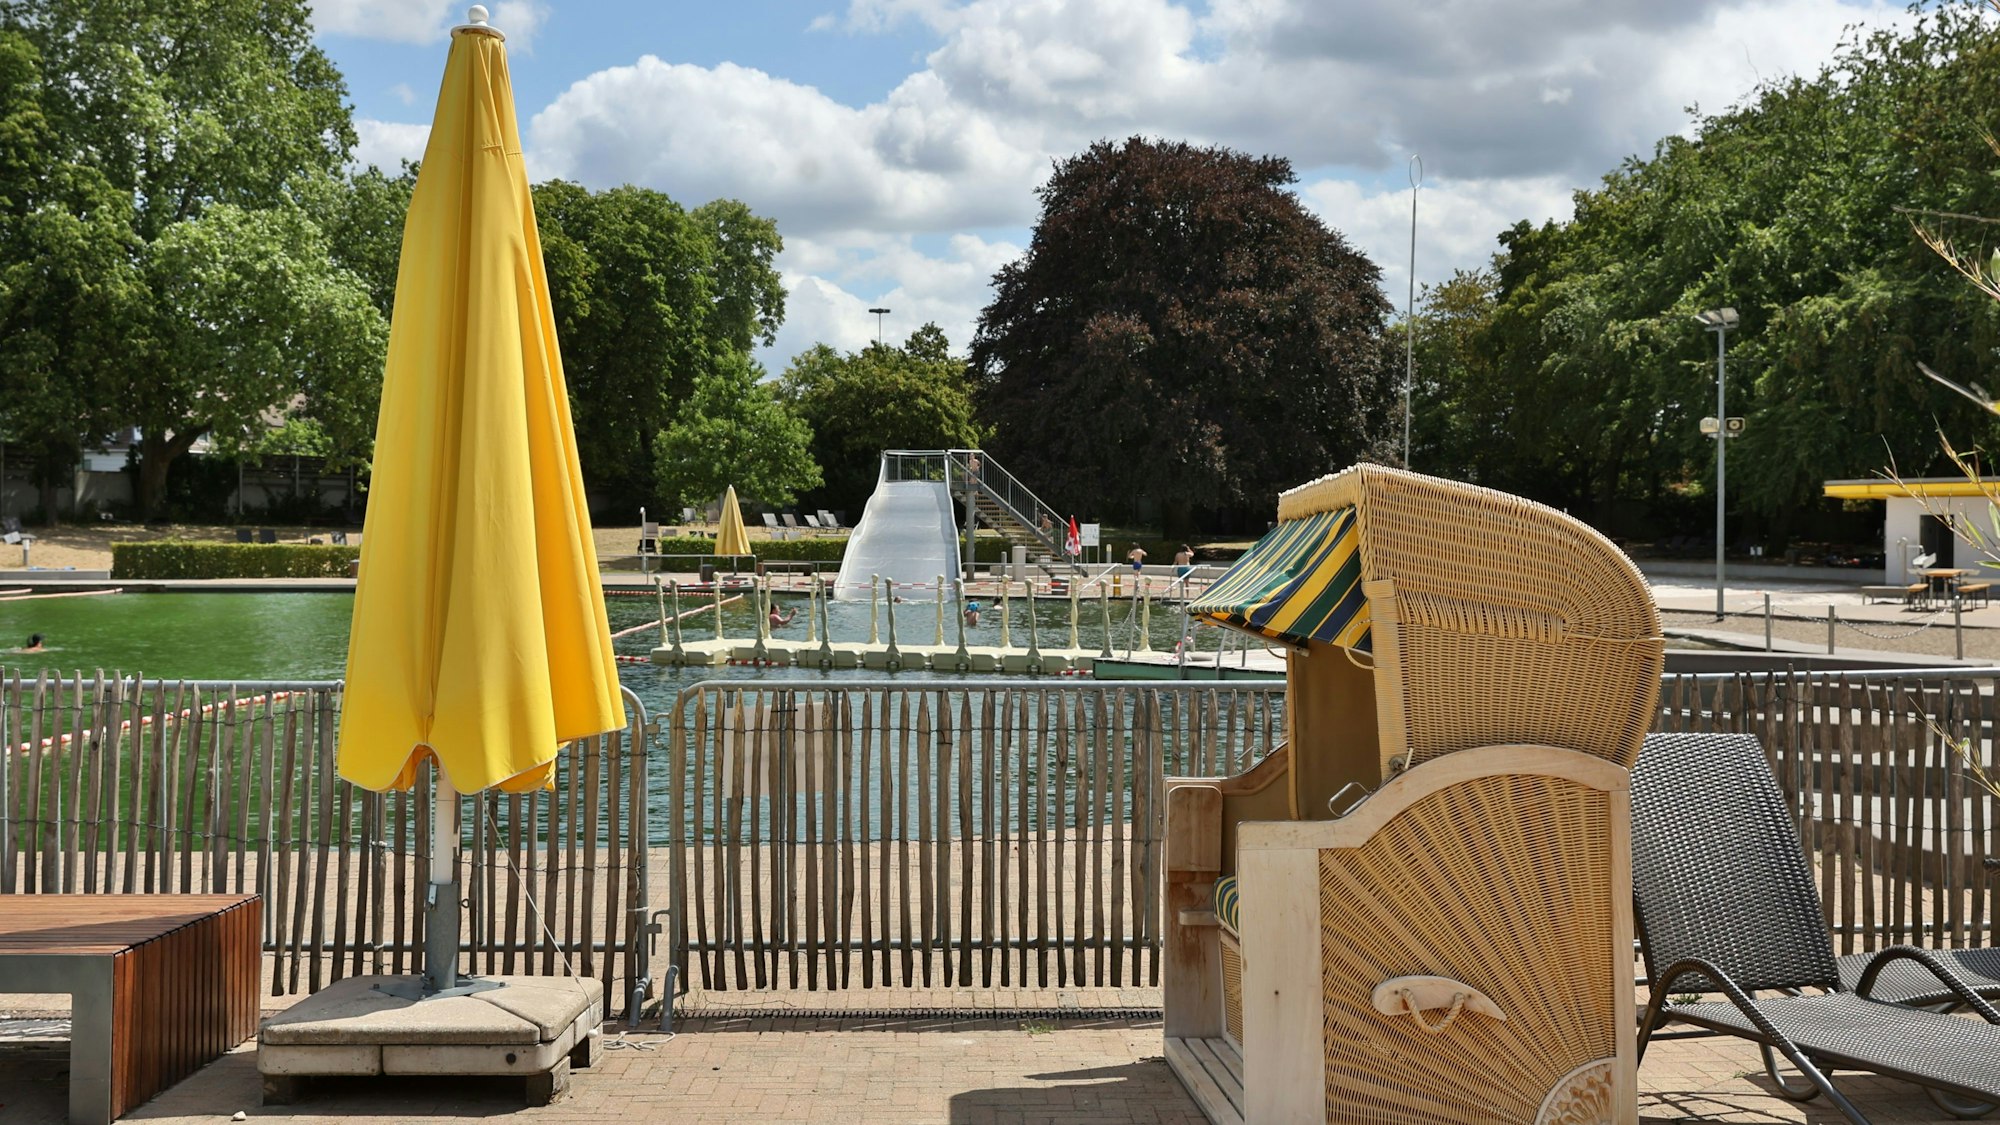 Das Bild zeigt einen Strandkorb und einen geschlossenen, gelben Sonnenschirm um Lentpark Freibad in Köln. Im Hintergrund sind die Rutsche uns das Naturbecken zu sehen,